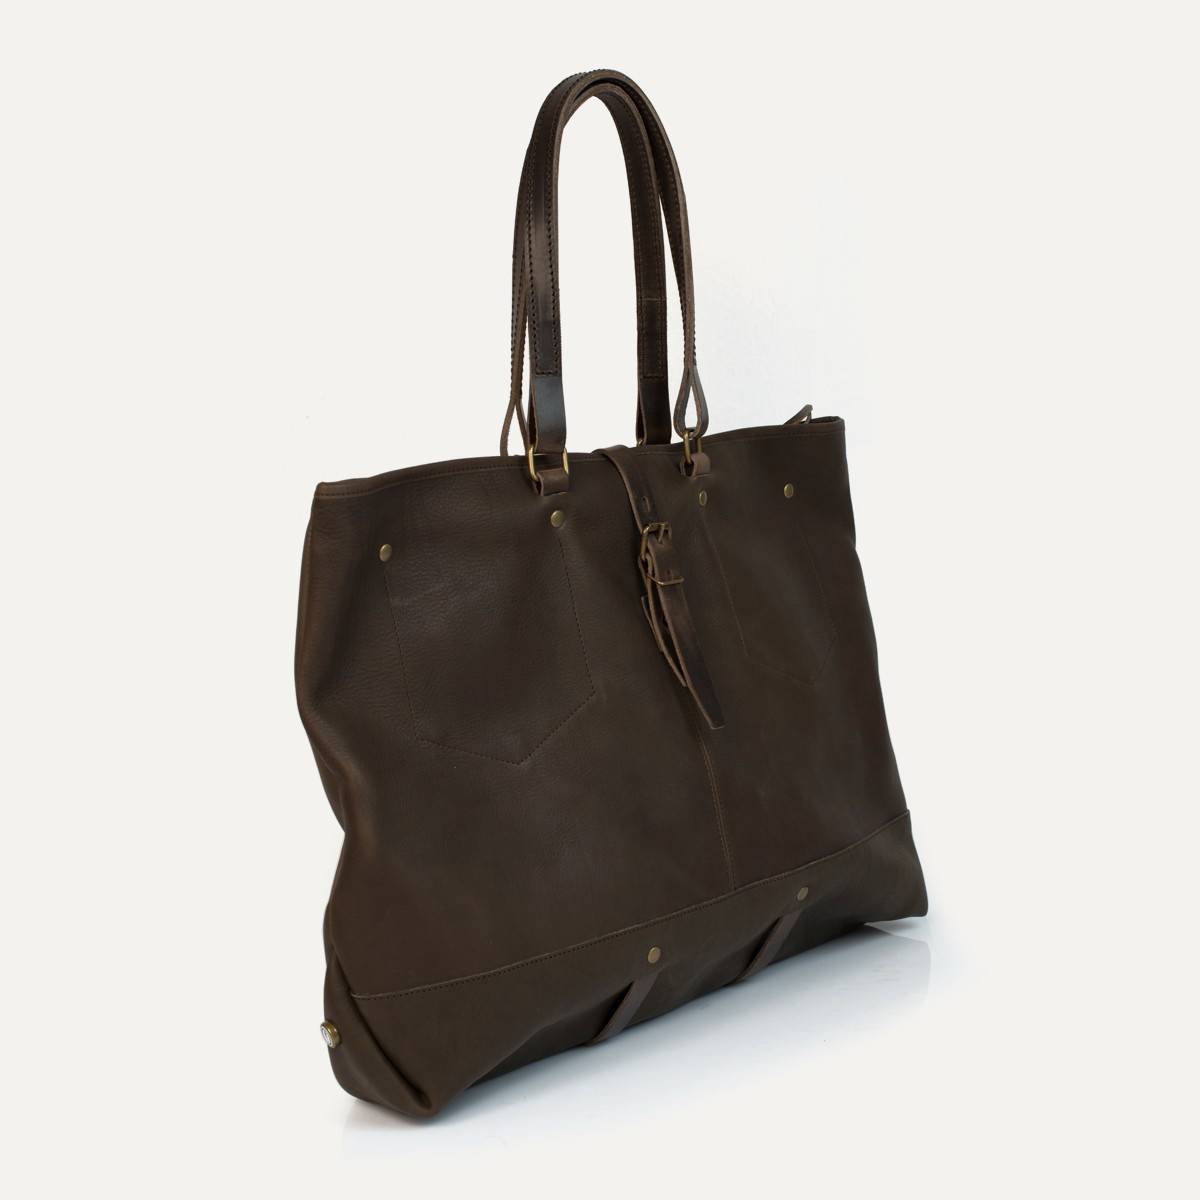 Garance shopping bag - Kenya (image n°2)